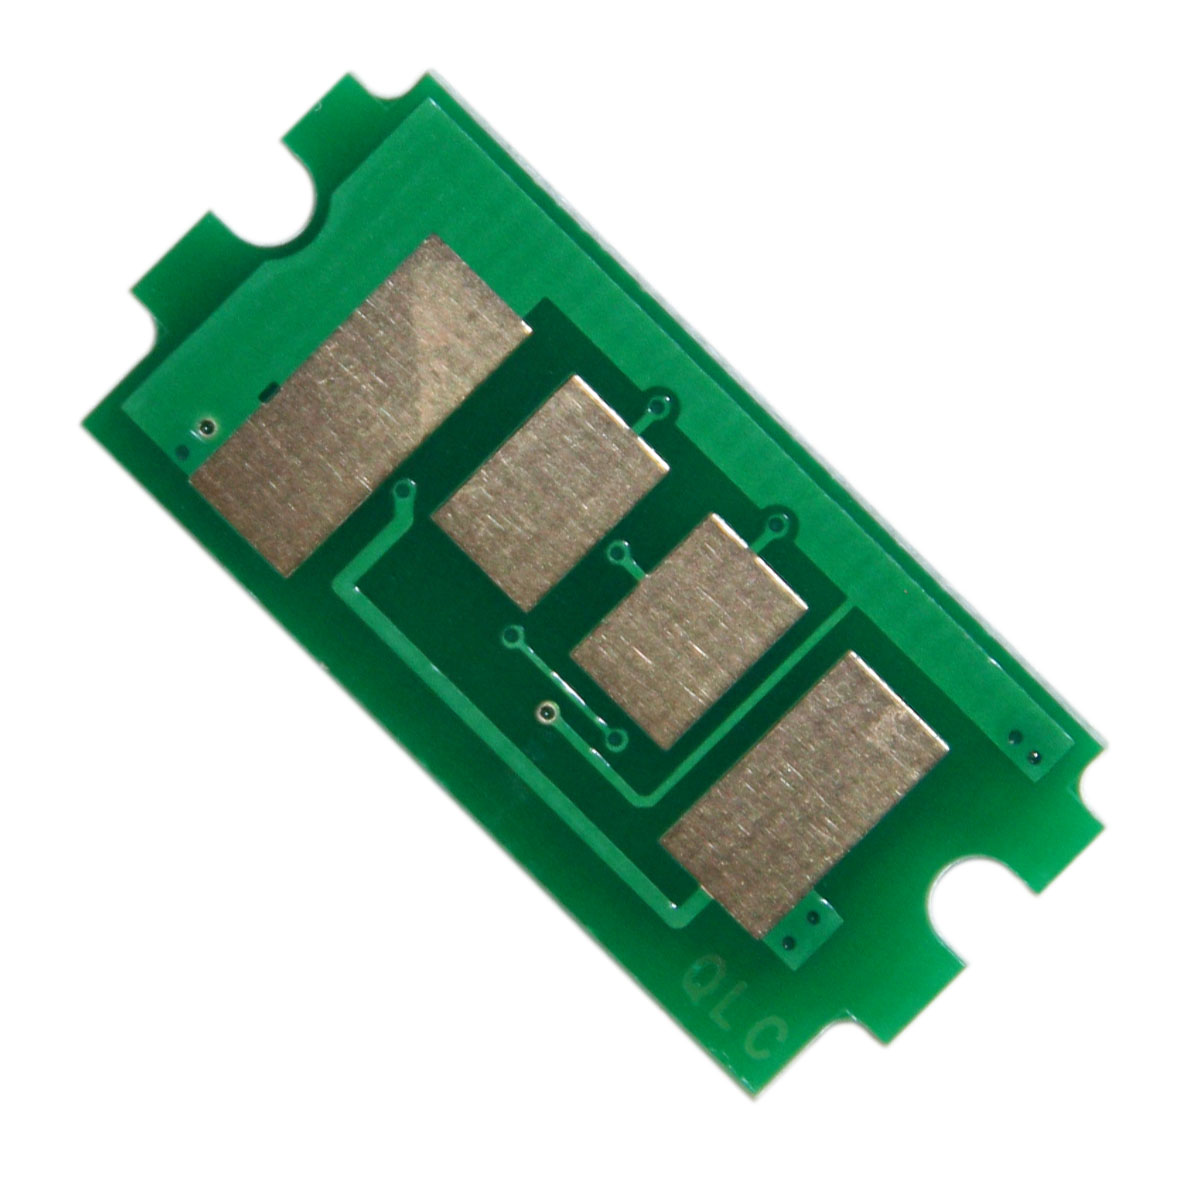 Chip zliczający Kyocera-Mita FS 4200